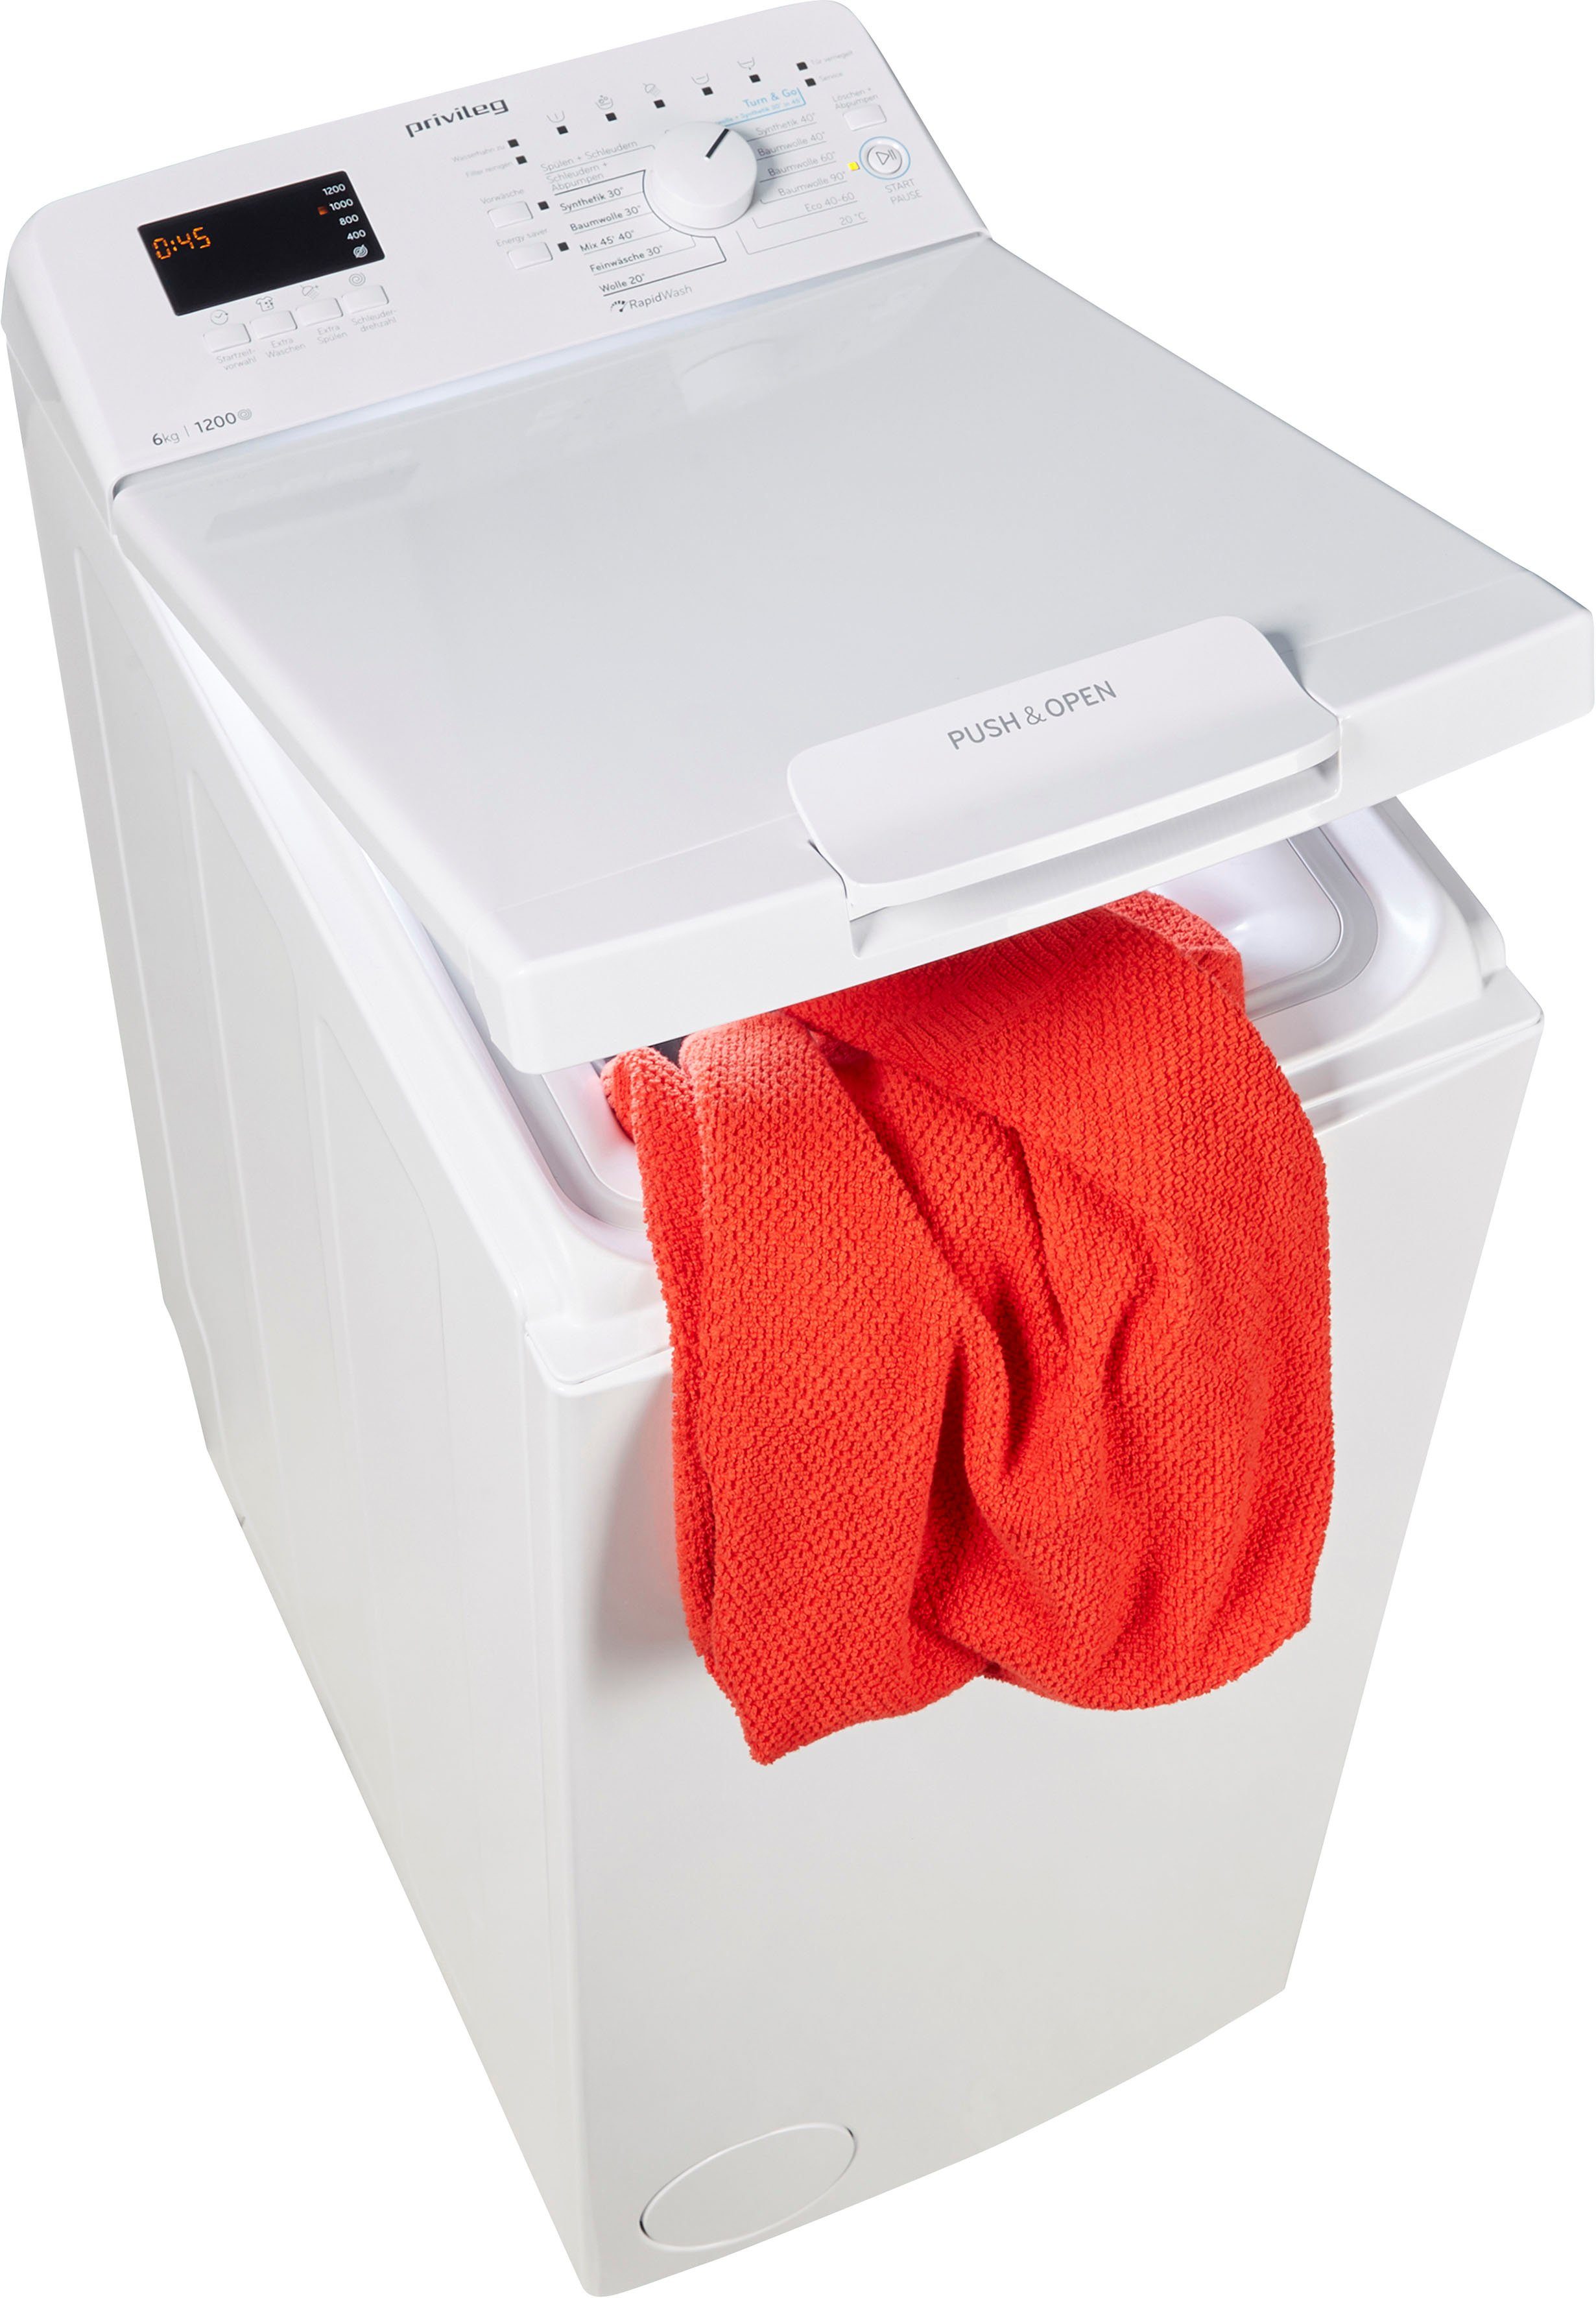 Privileg Waschmaschine Toplader C623 U/min, 6 kg, Herstellergarantie Monate N, 50 PWT 1200